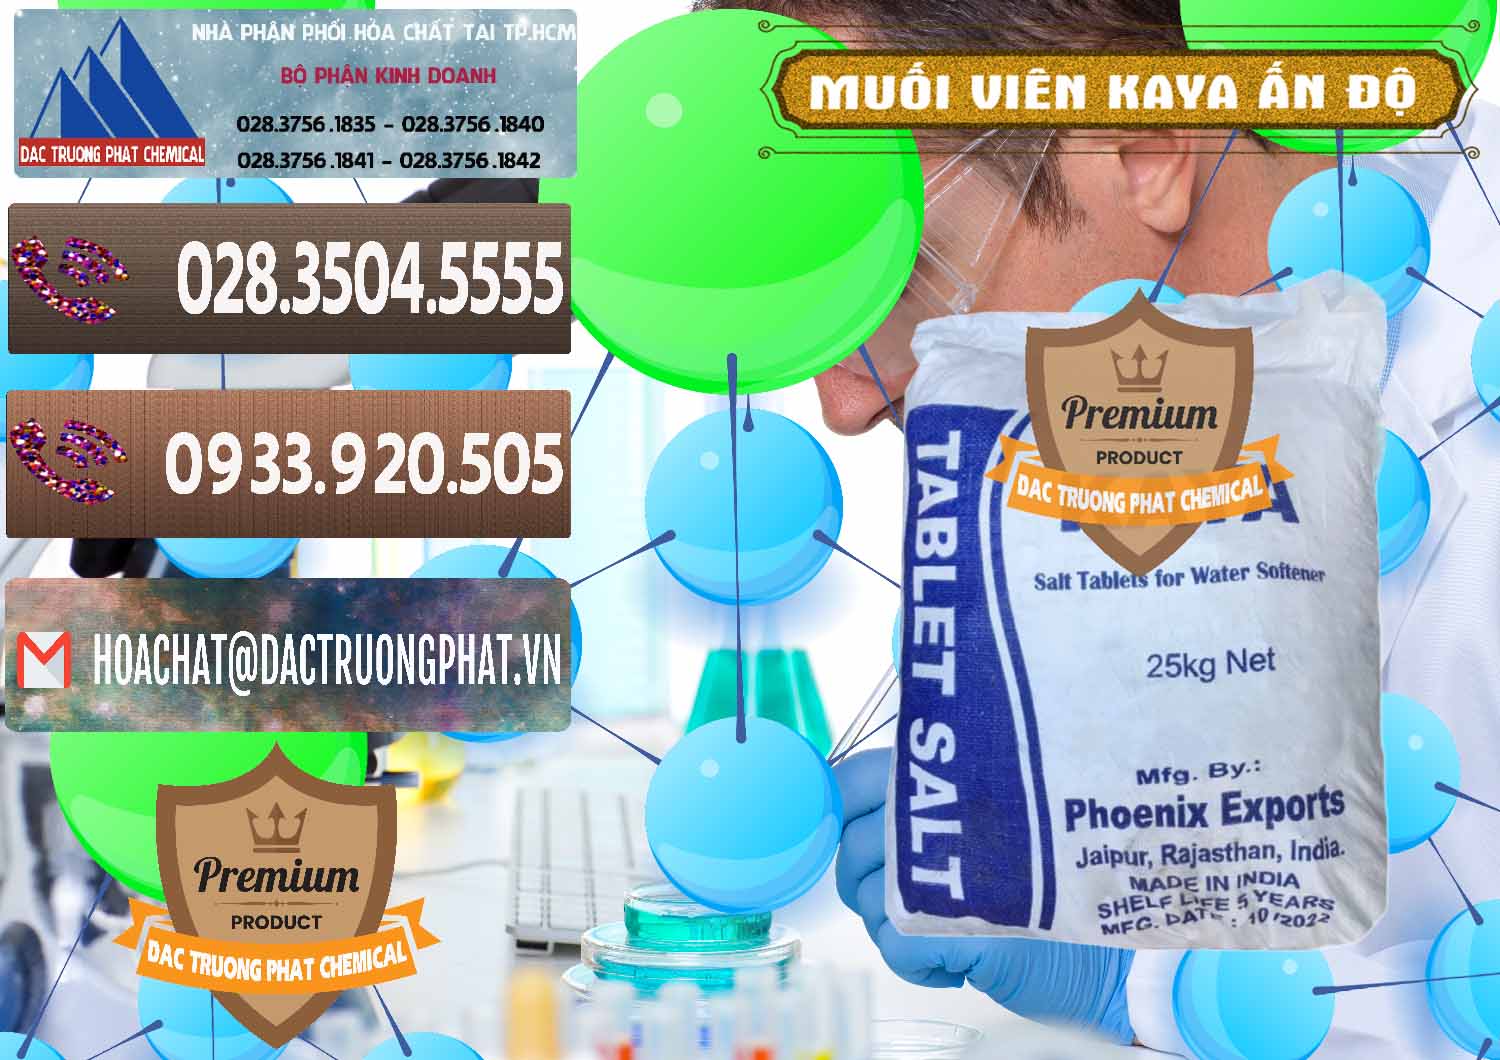 Cty chuyên kinh doanh và bán Muối NaCL – Sodium Chloride Dạng Viên Tablets Kaya Ấn Độ India - 0368 - Nhà phân phối và cung ứng hóa chất tại TP.HCM - hoachatviet.net